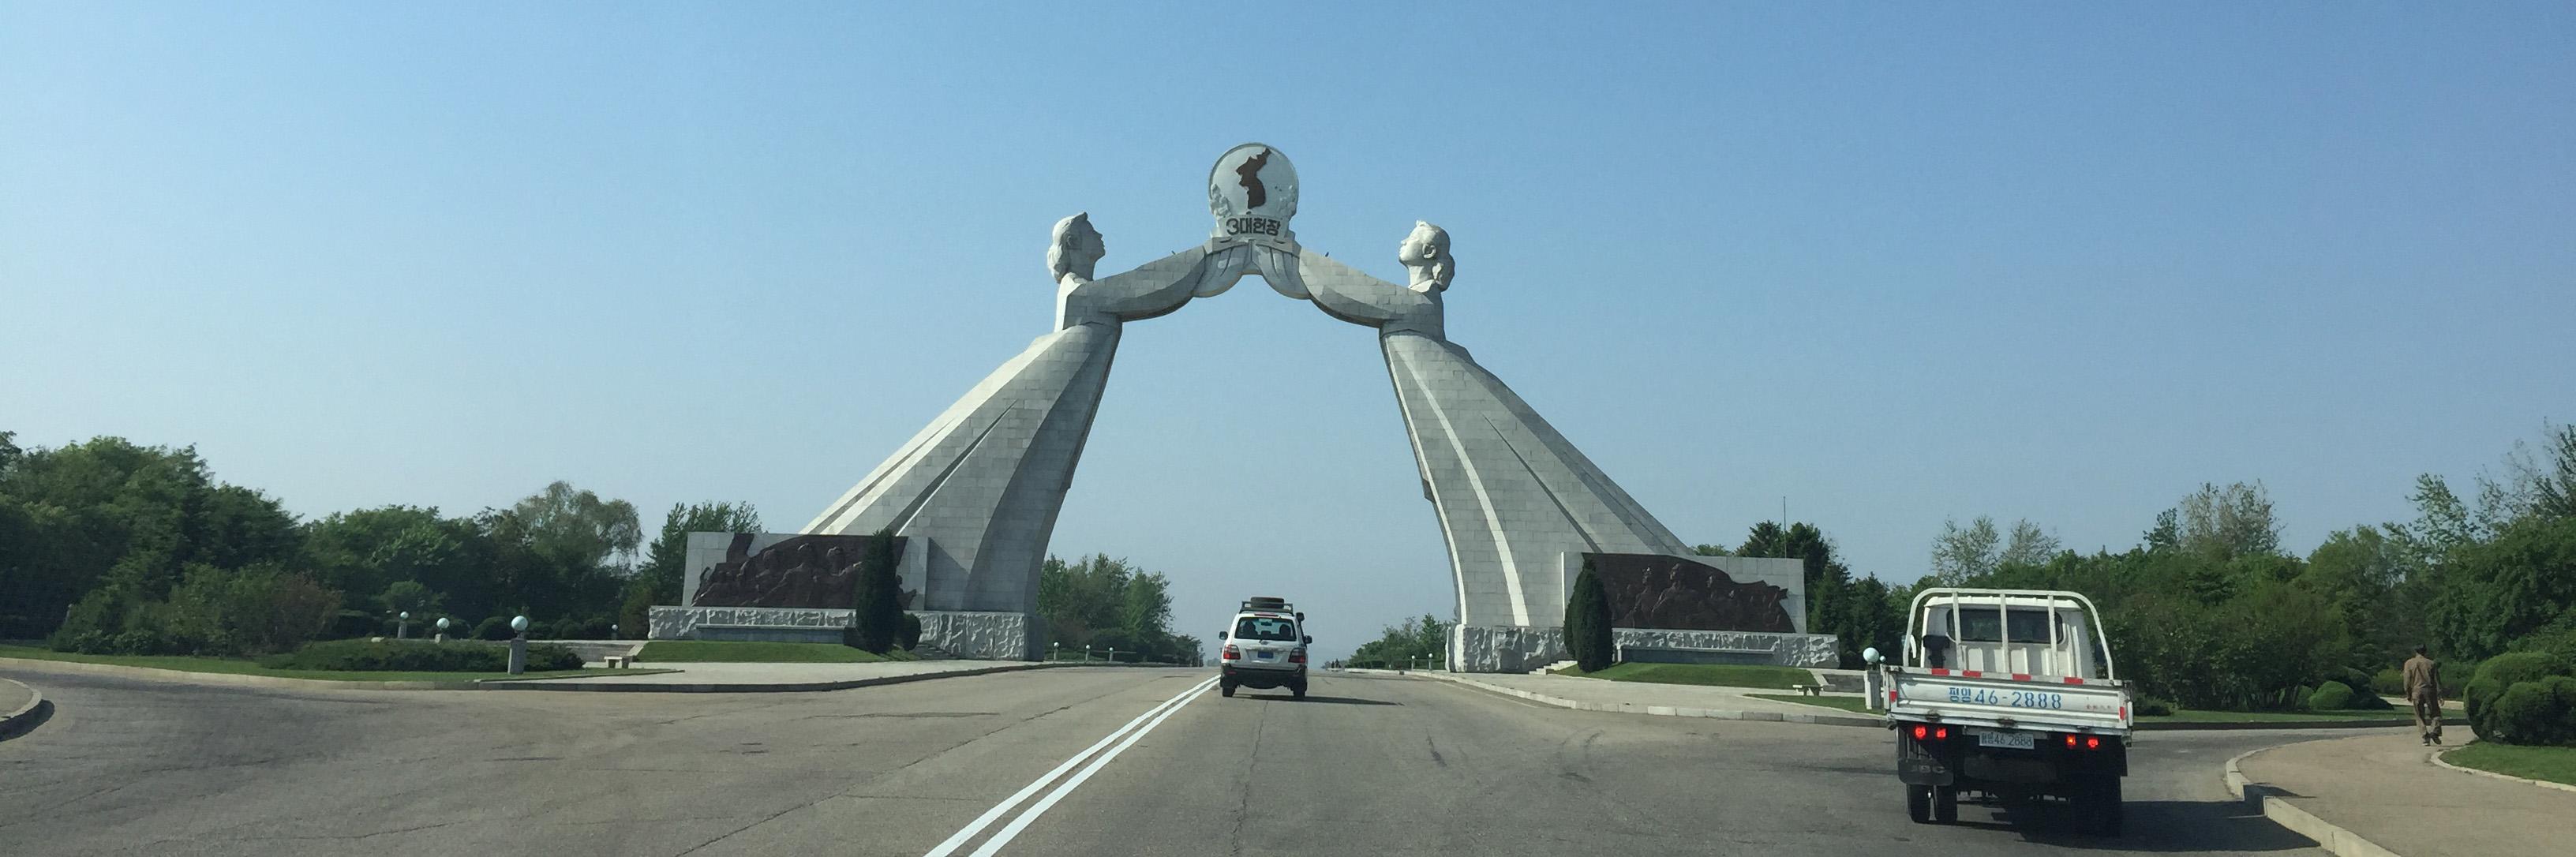 Arche monumentale à Pyongyang. [Raphaël Grand]